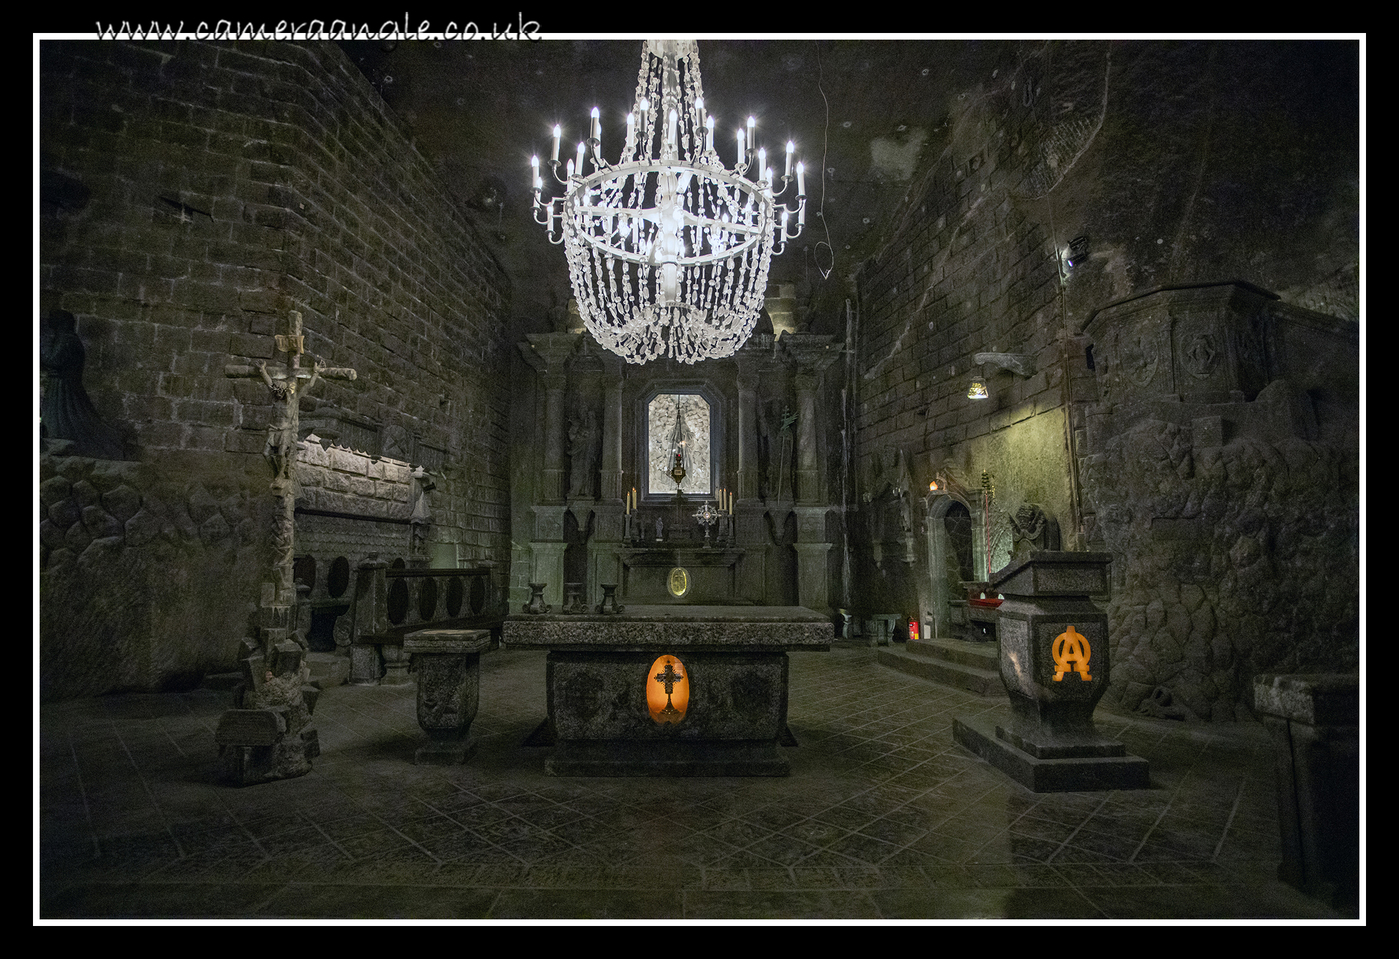 Wieliczka Salt Mine Altar
Keywords: Wieliczka Salt Mine 2019 Krakow Altar